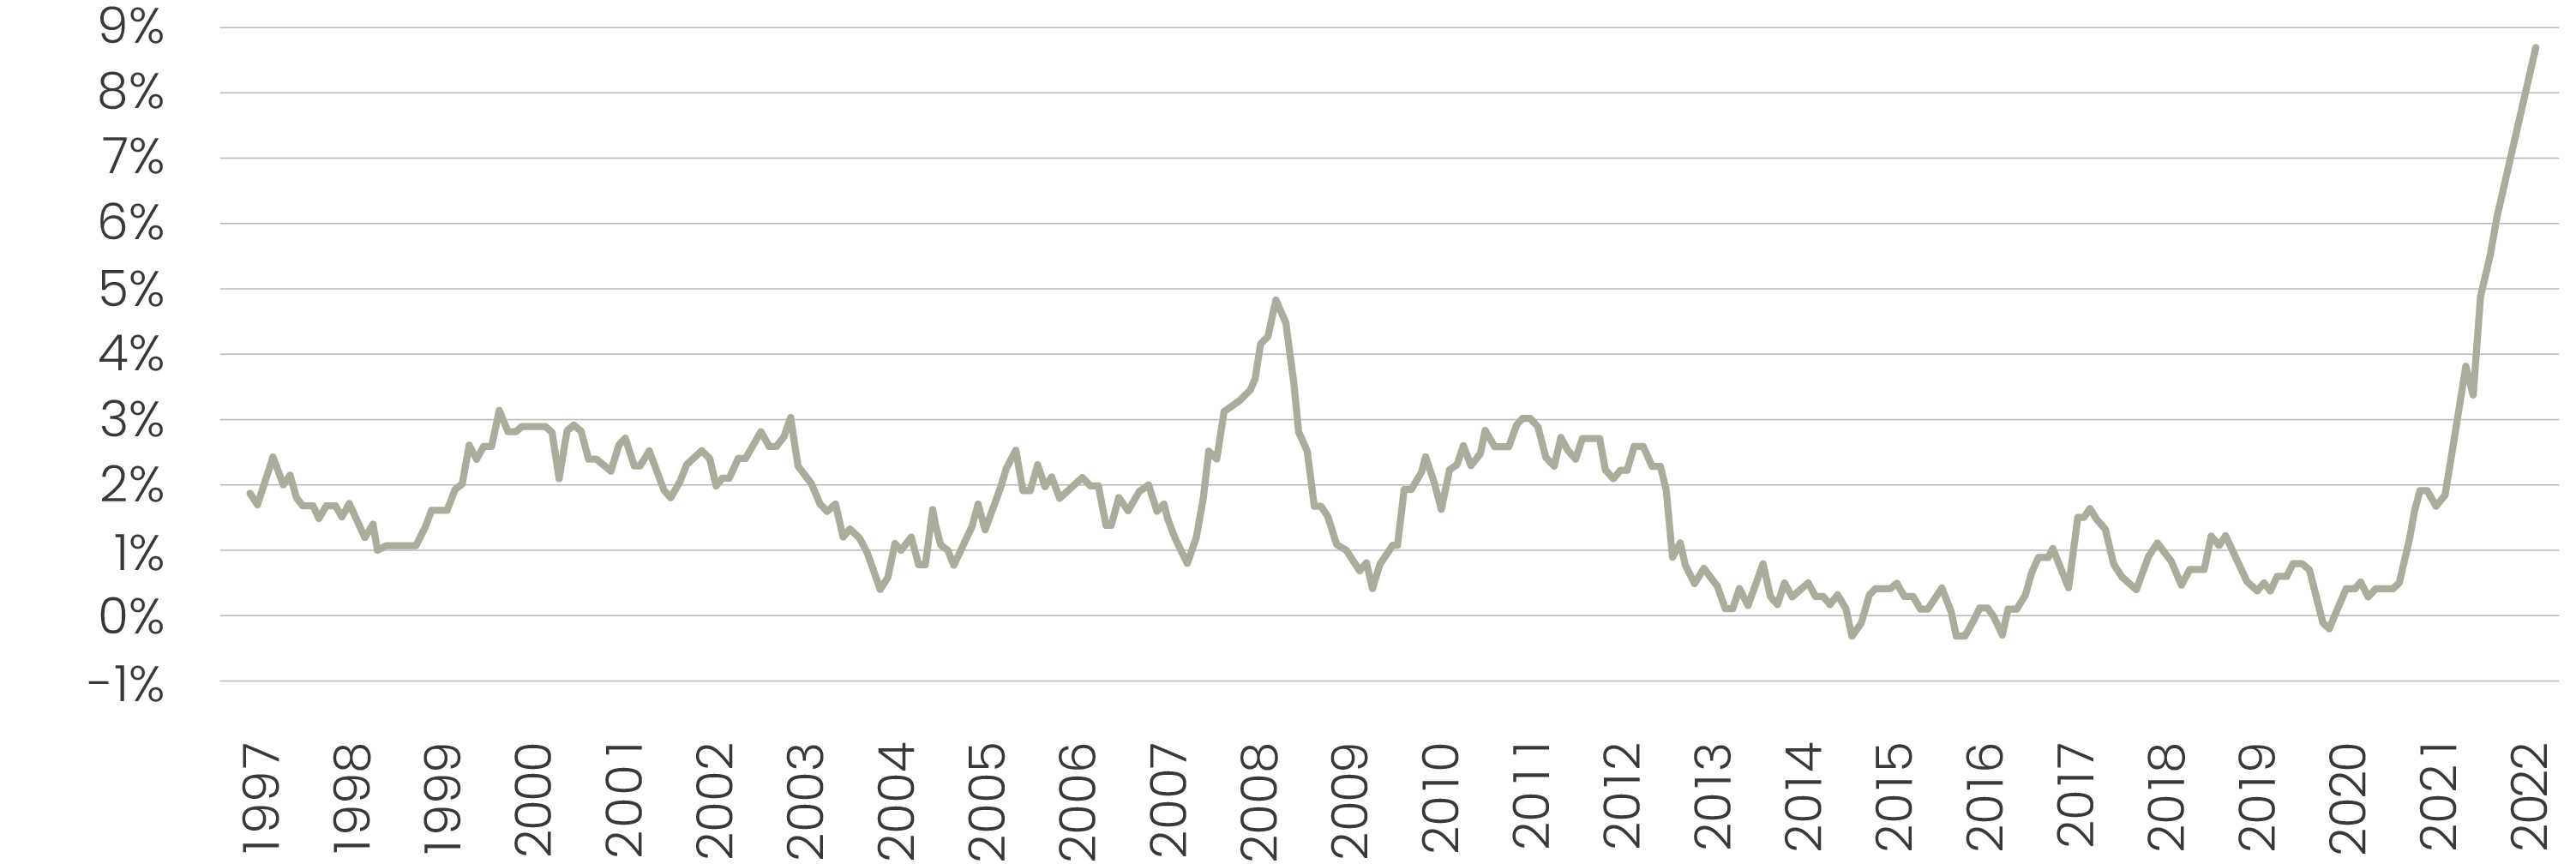 Udvikling i forbrugerpriserne i Danmark 1997-2022